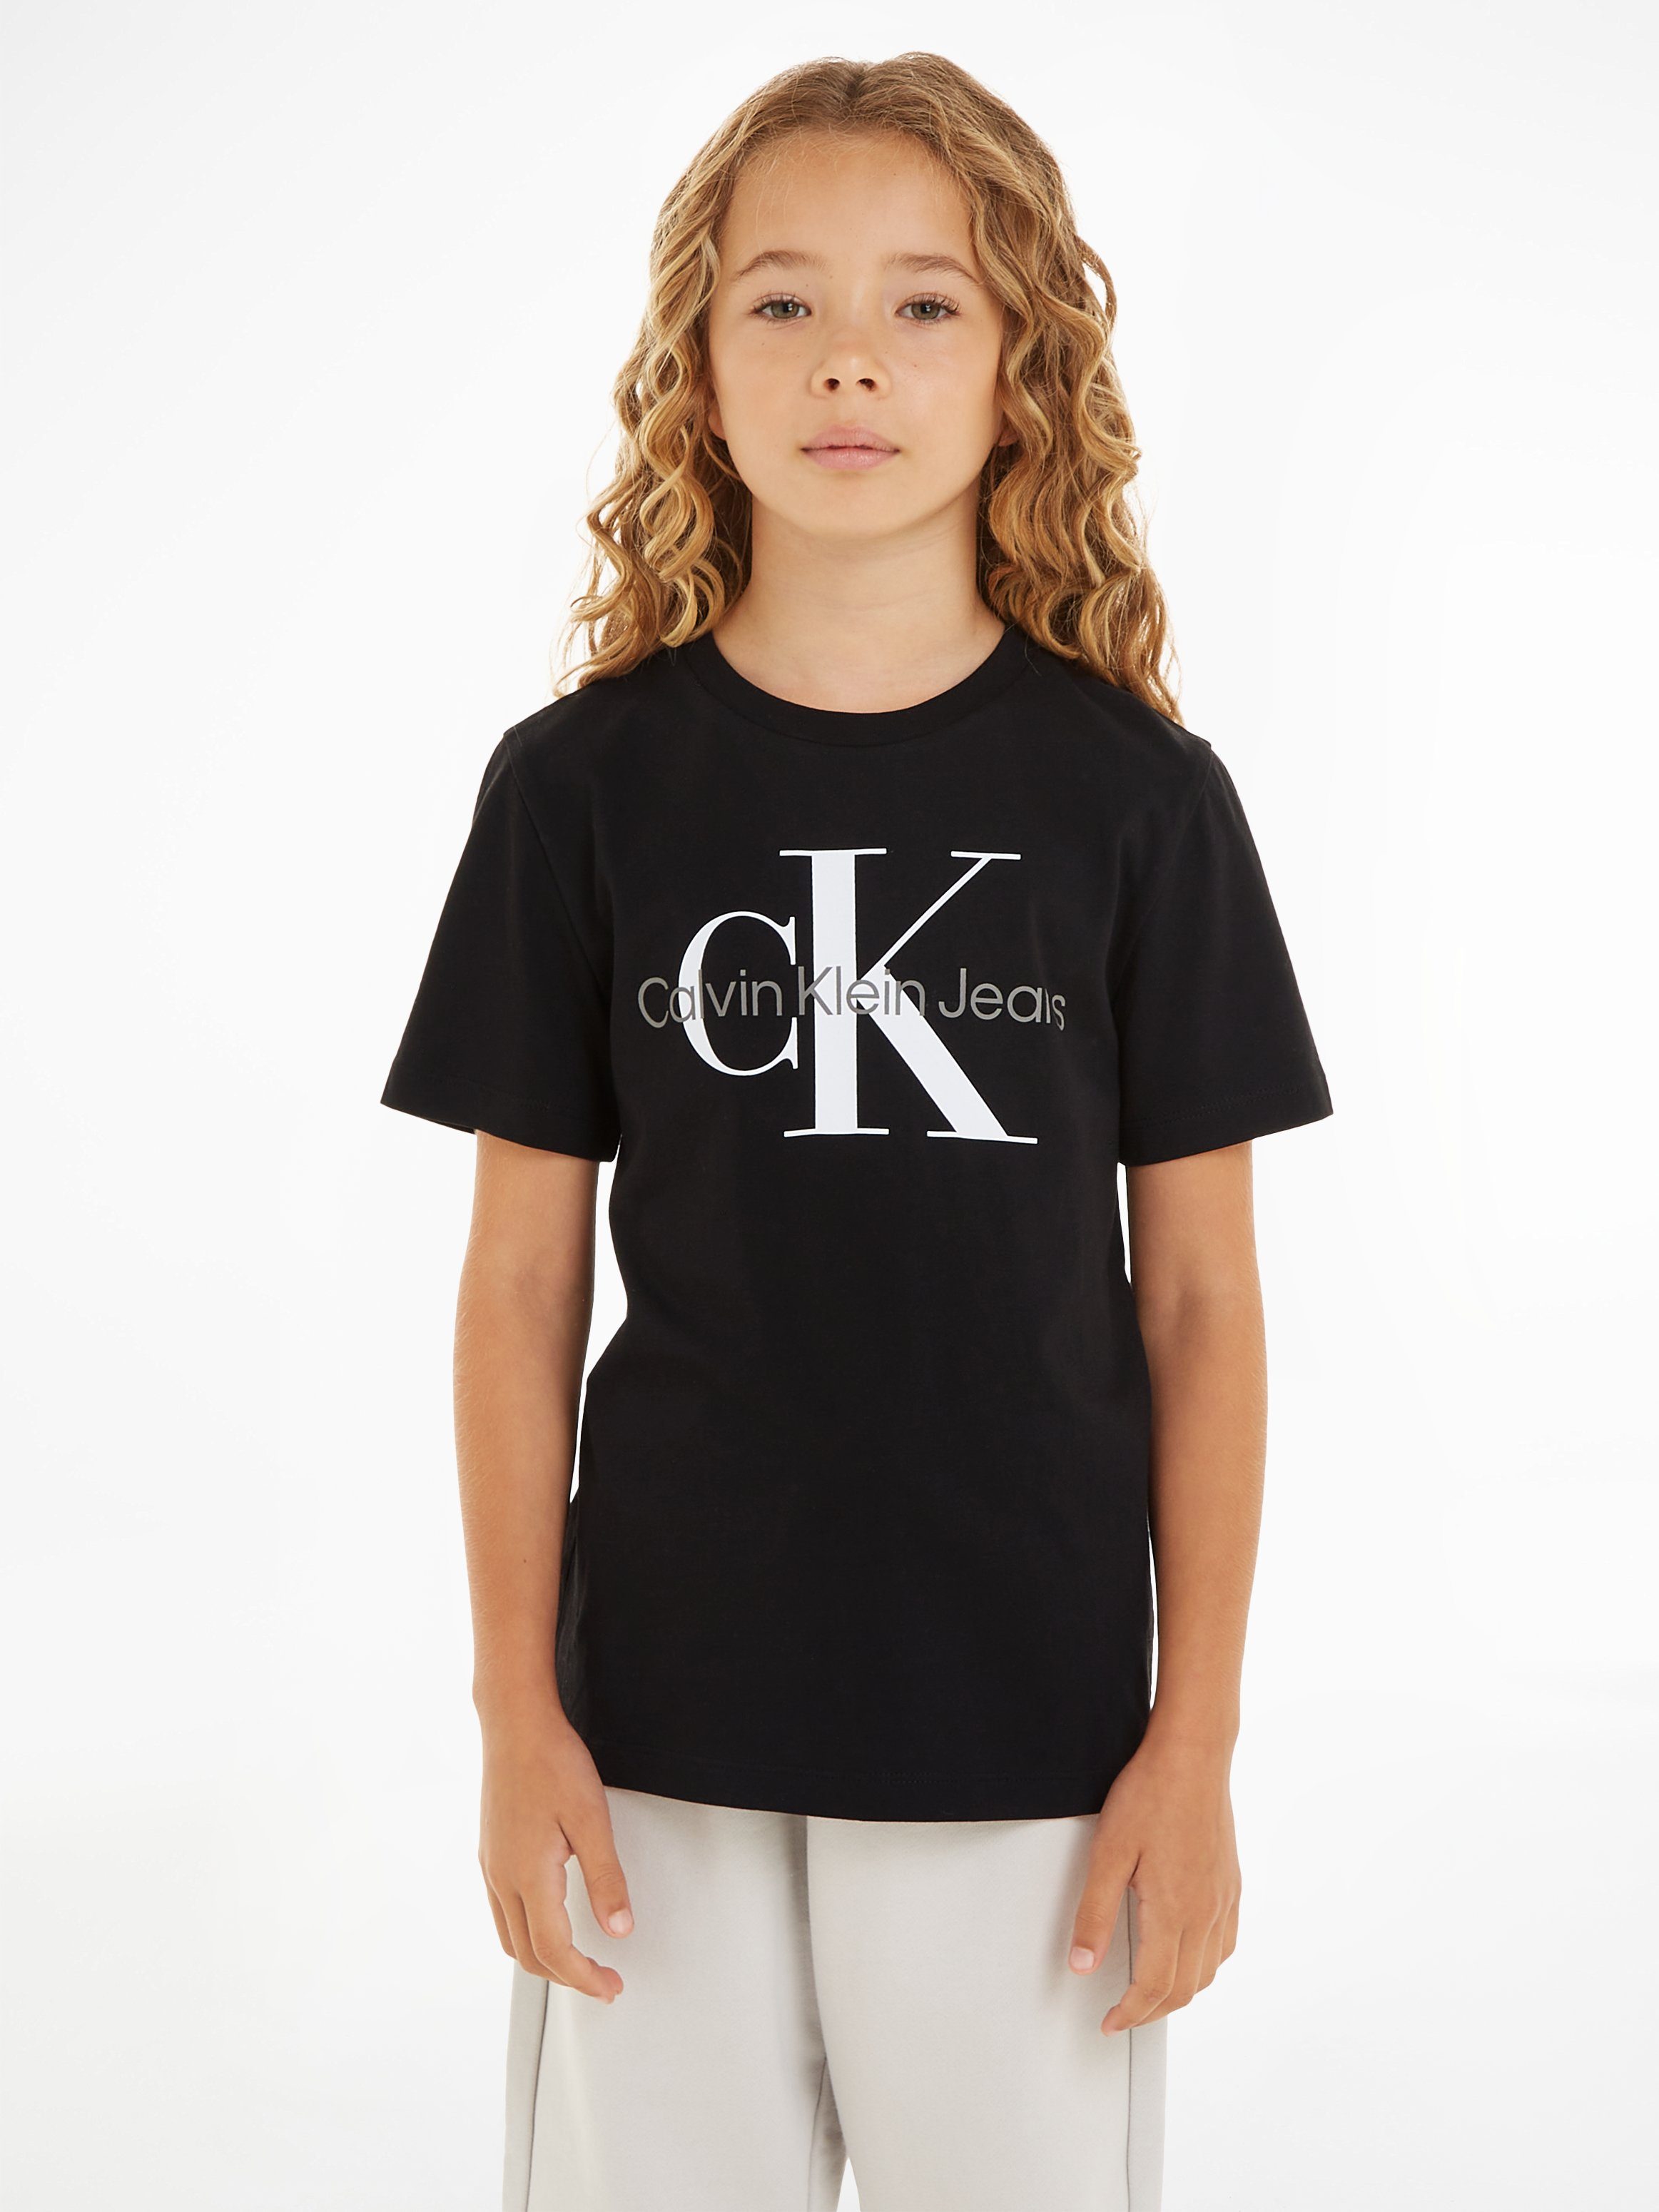 MONOGRAM Klein Jeans T-SHIRT Black Calvin CK SS T-Shirt Ck